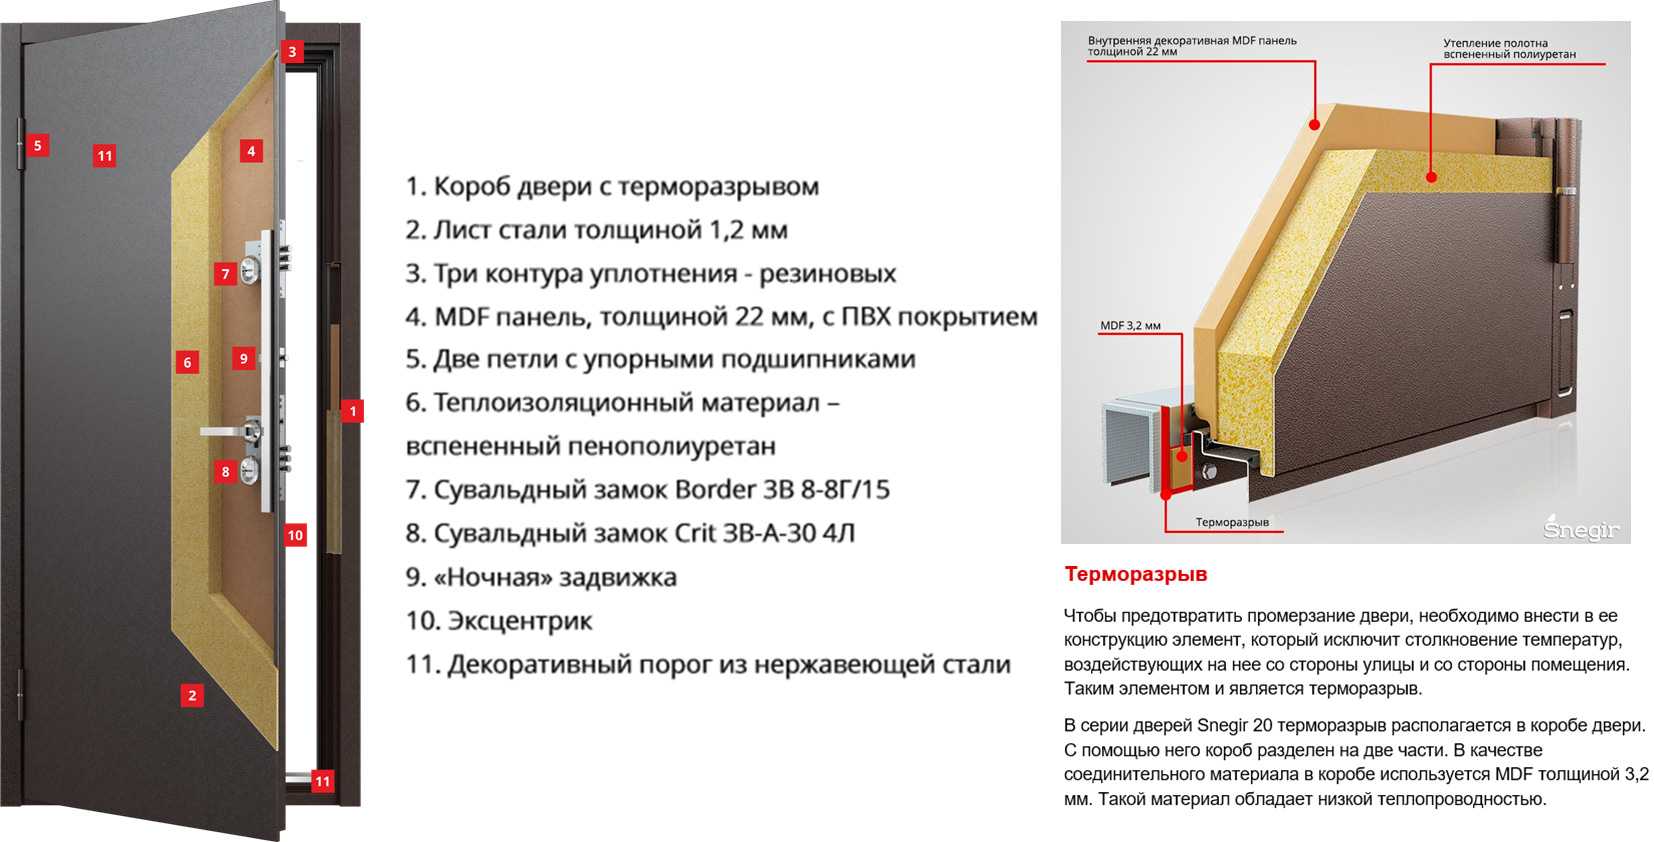 Особенности входных дверей с терморазрывом: преимущества и недостатки, популярные производители |+45 фото